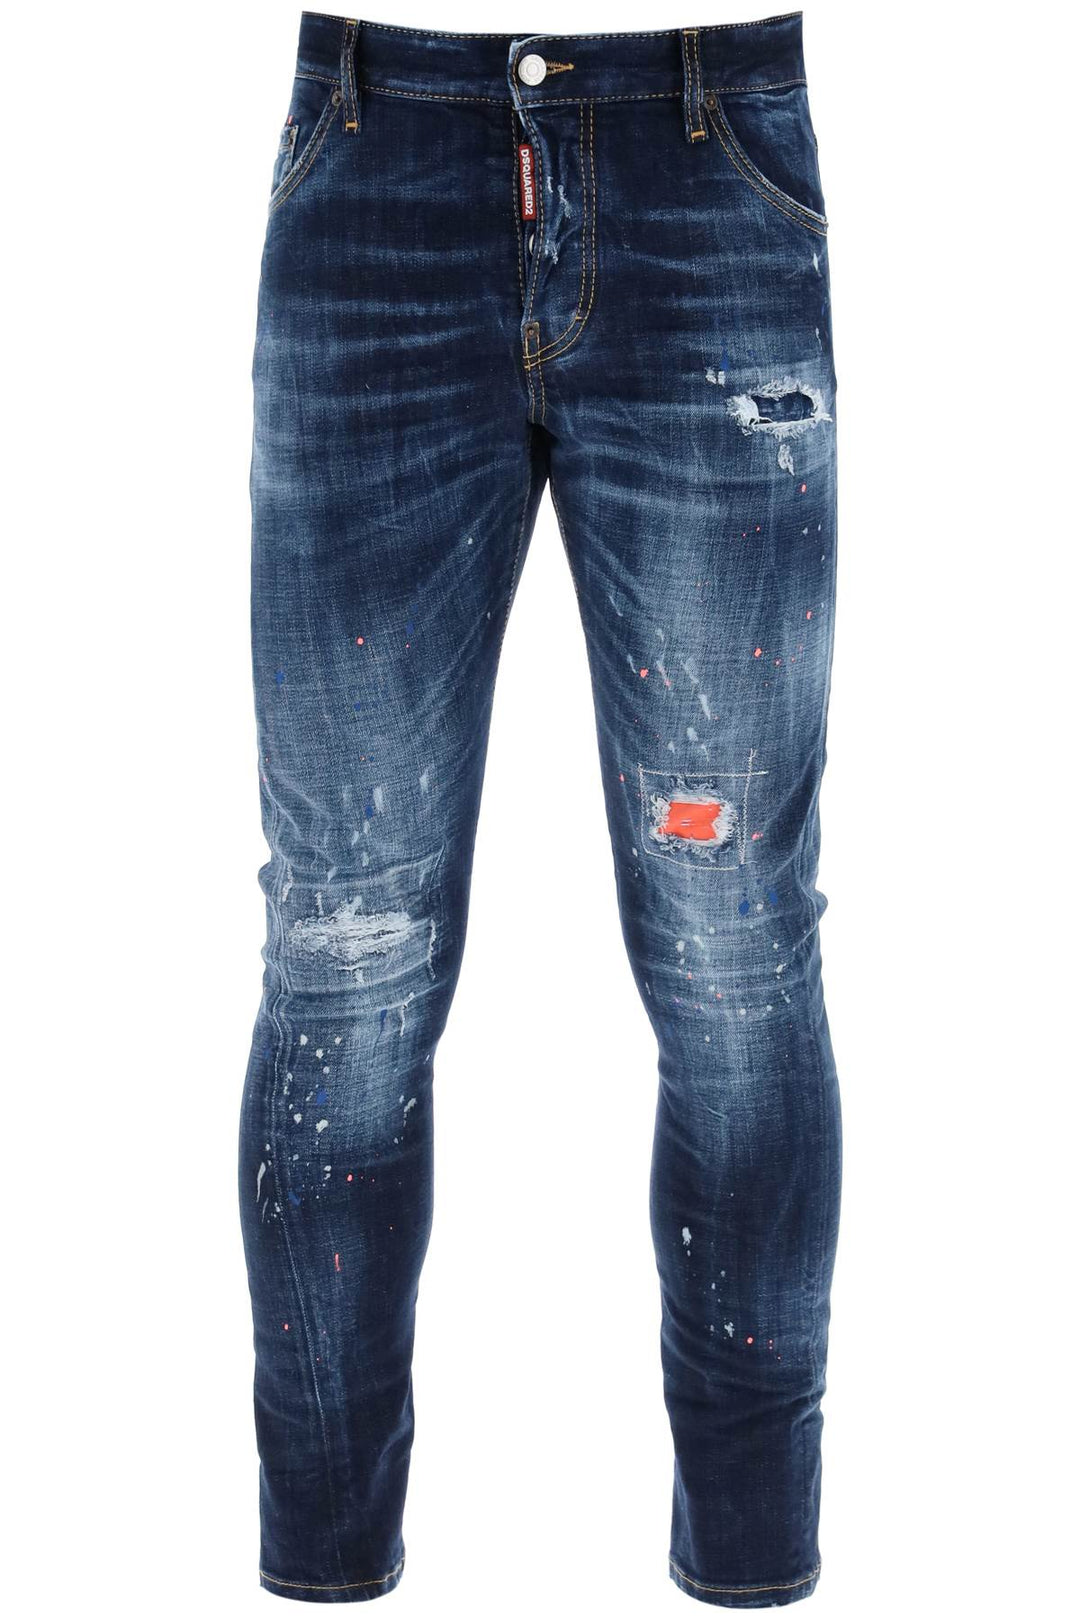 Jeans Sexy Twist In Dark Neon Splash Wash